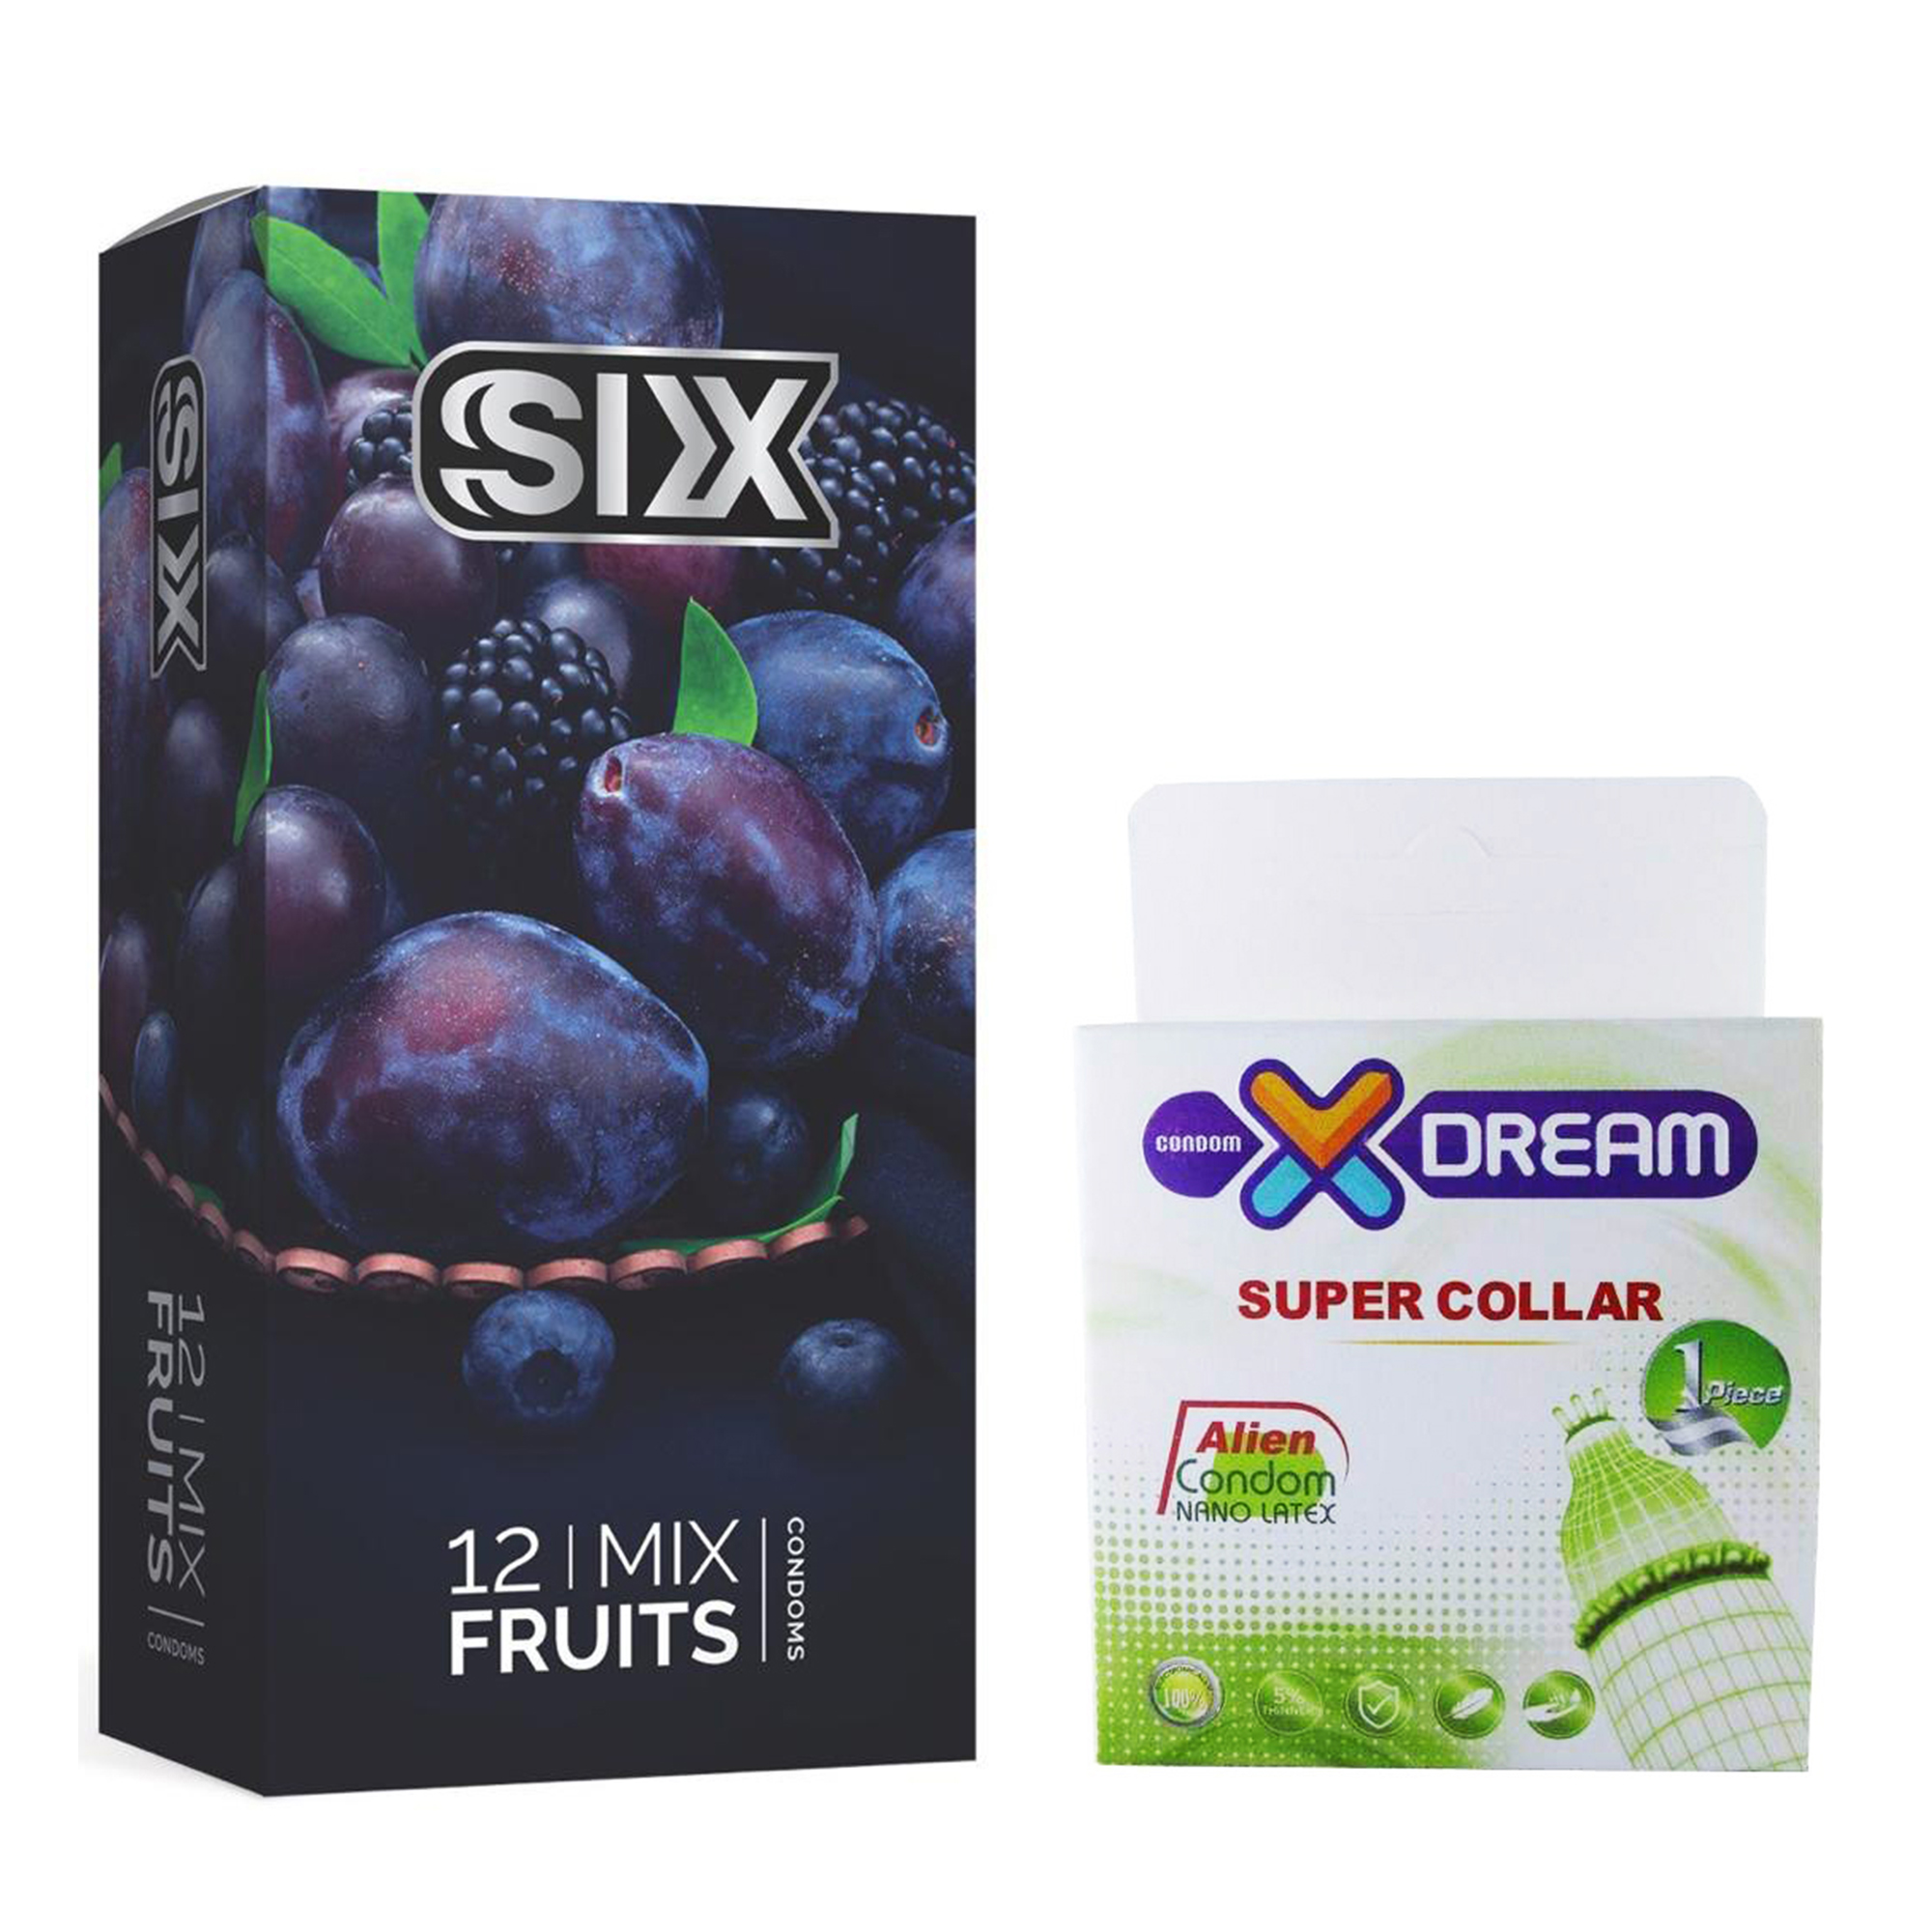 کاندوم سیکس مدل Mix Fruits بسته 12 عددی به همراه کاندوم ایکس دریم مدل Super Collar